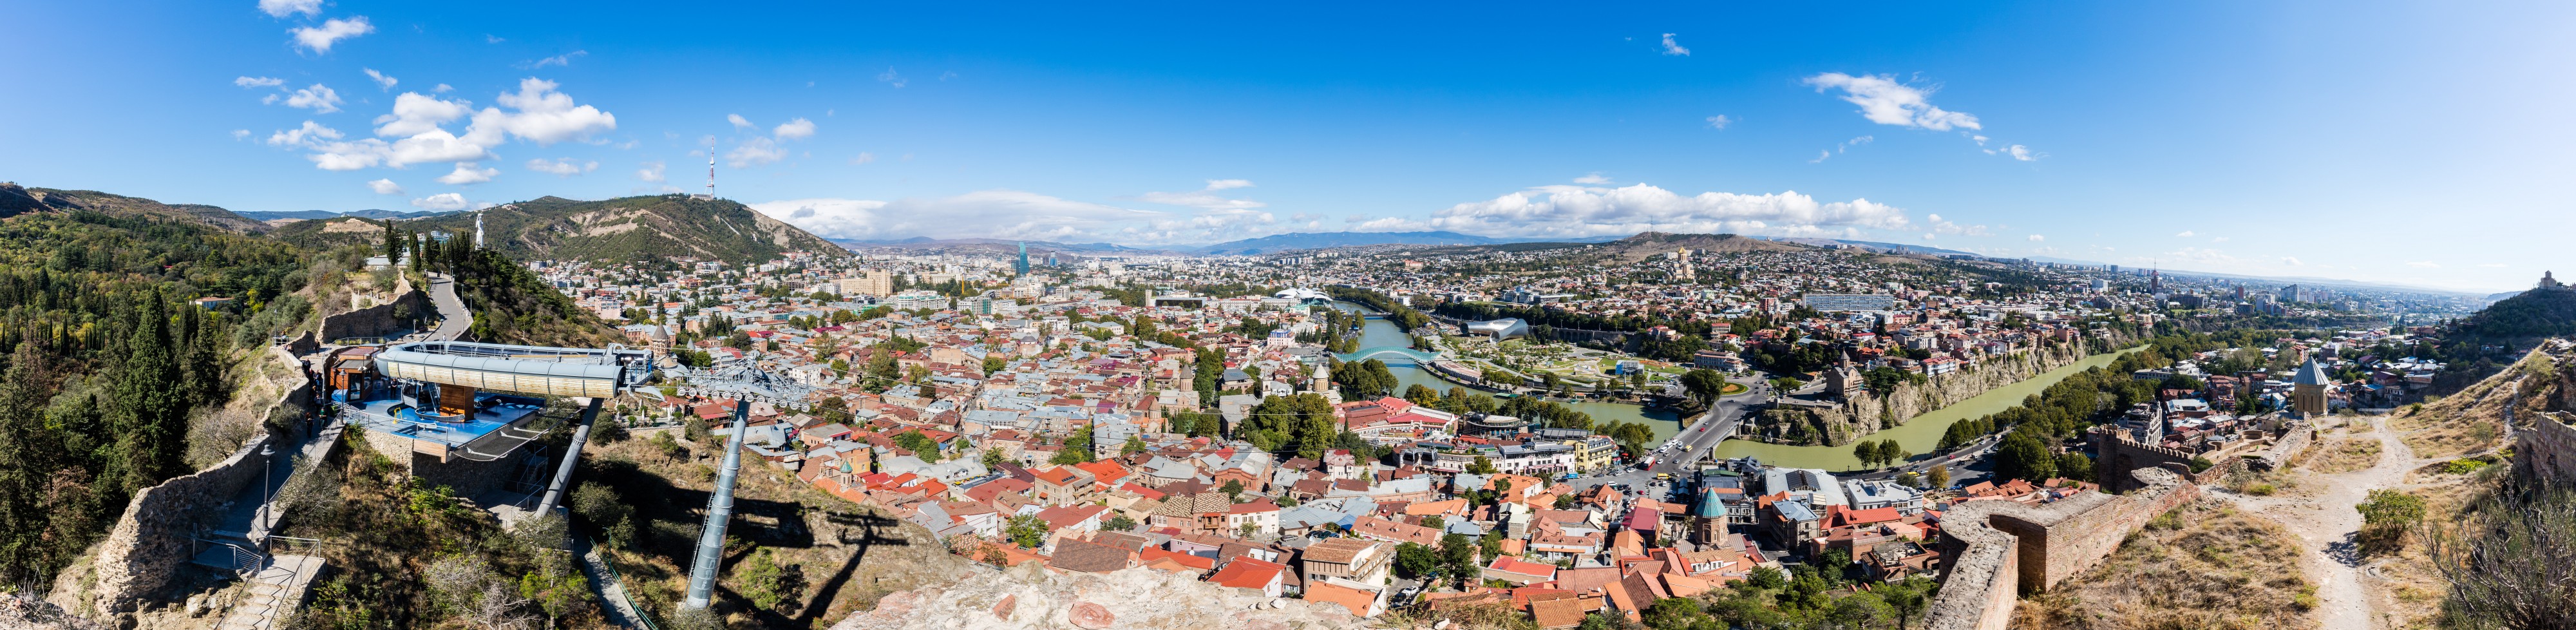 Vista de Tiflis, Georgia, 2016-09-29, DD 67-71 PAN